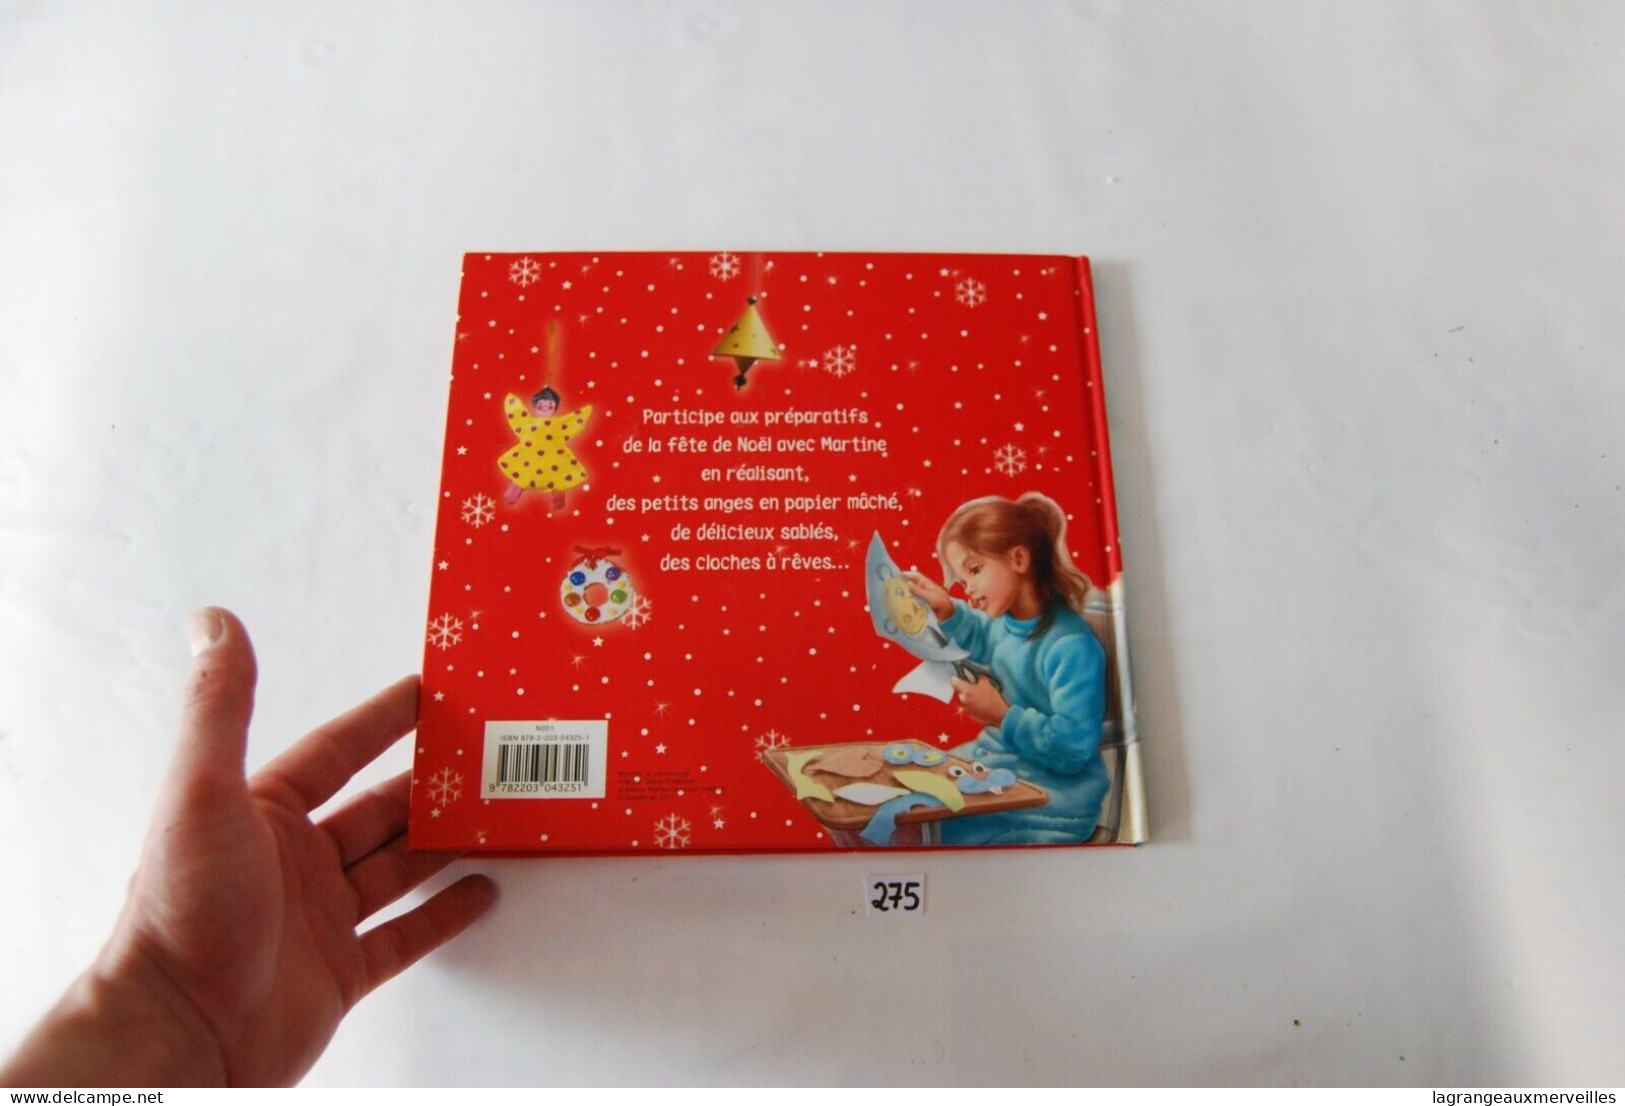 C275 Livre - Martine Et Les Bricolages De Noël - Martine